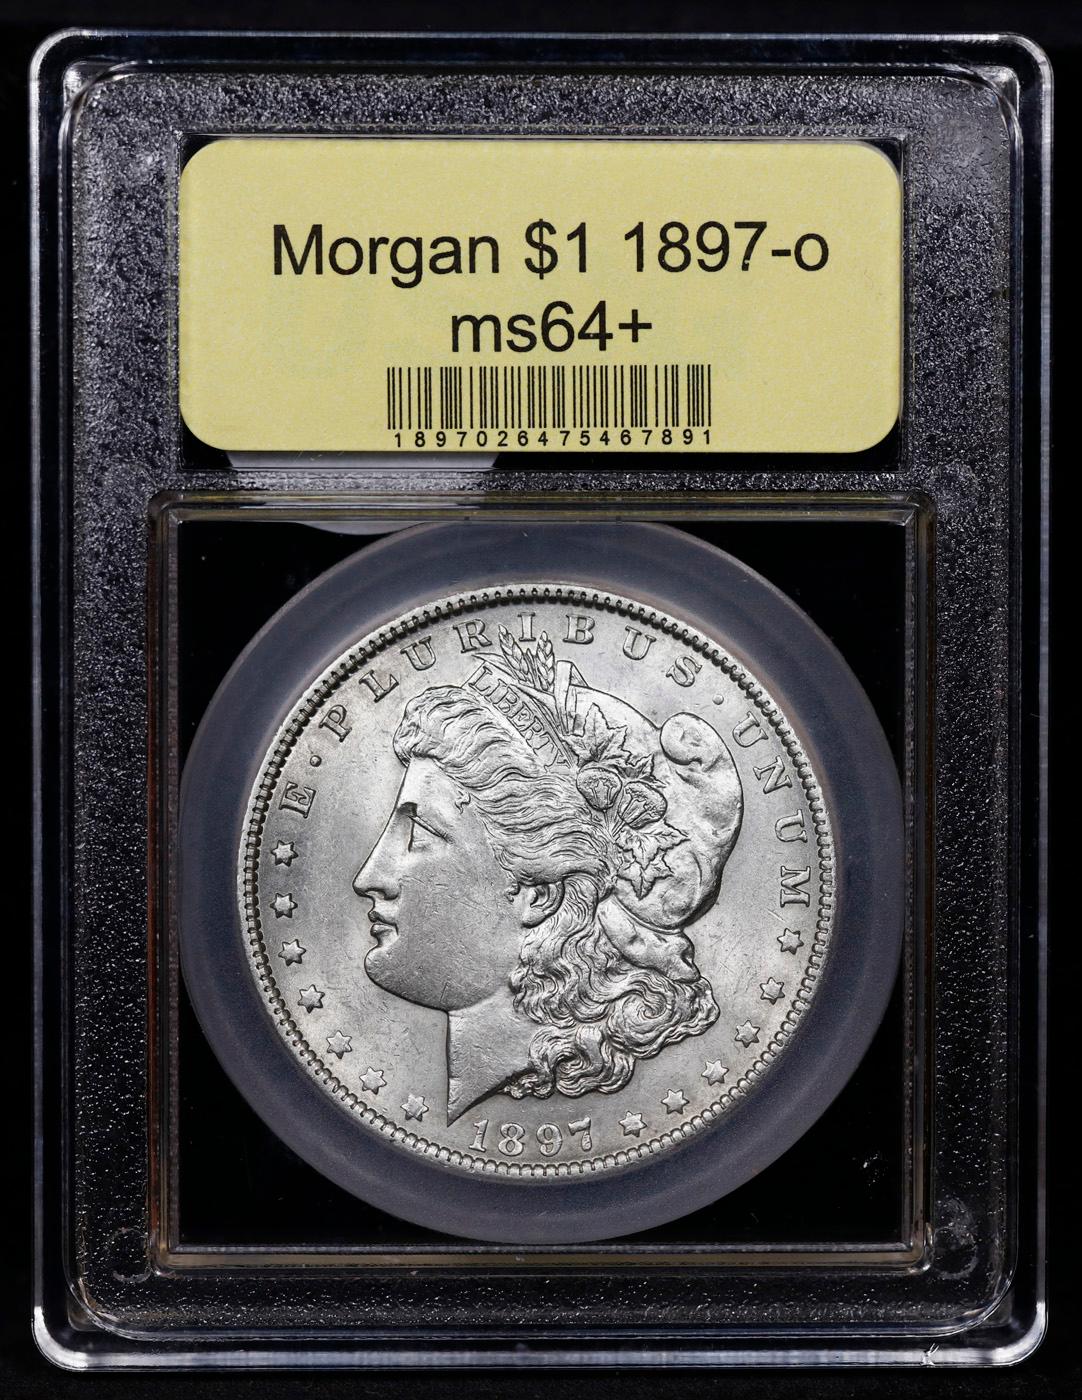 ***Auction Highlight*** 1897-o Morgan Dollar $1 Graded Choice+ Unc By USCG (fc)